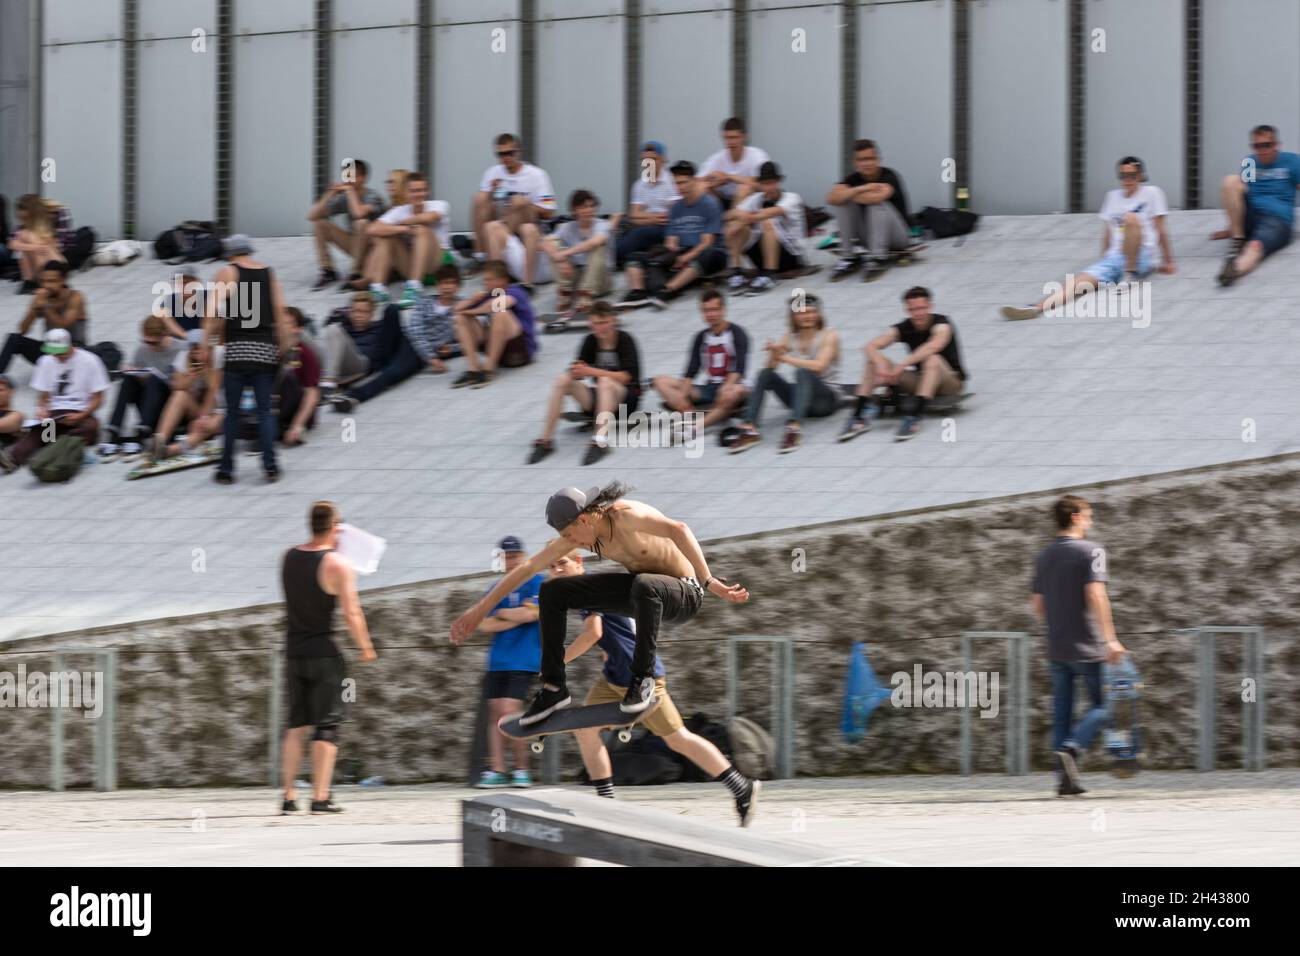 Lublino, Polonia - 29 maggio 2016: Lublin Sportival - Skateboard zone at Centrum Spotkania Kultur (Centro per l'incontro delle culture) Foto Stock